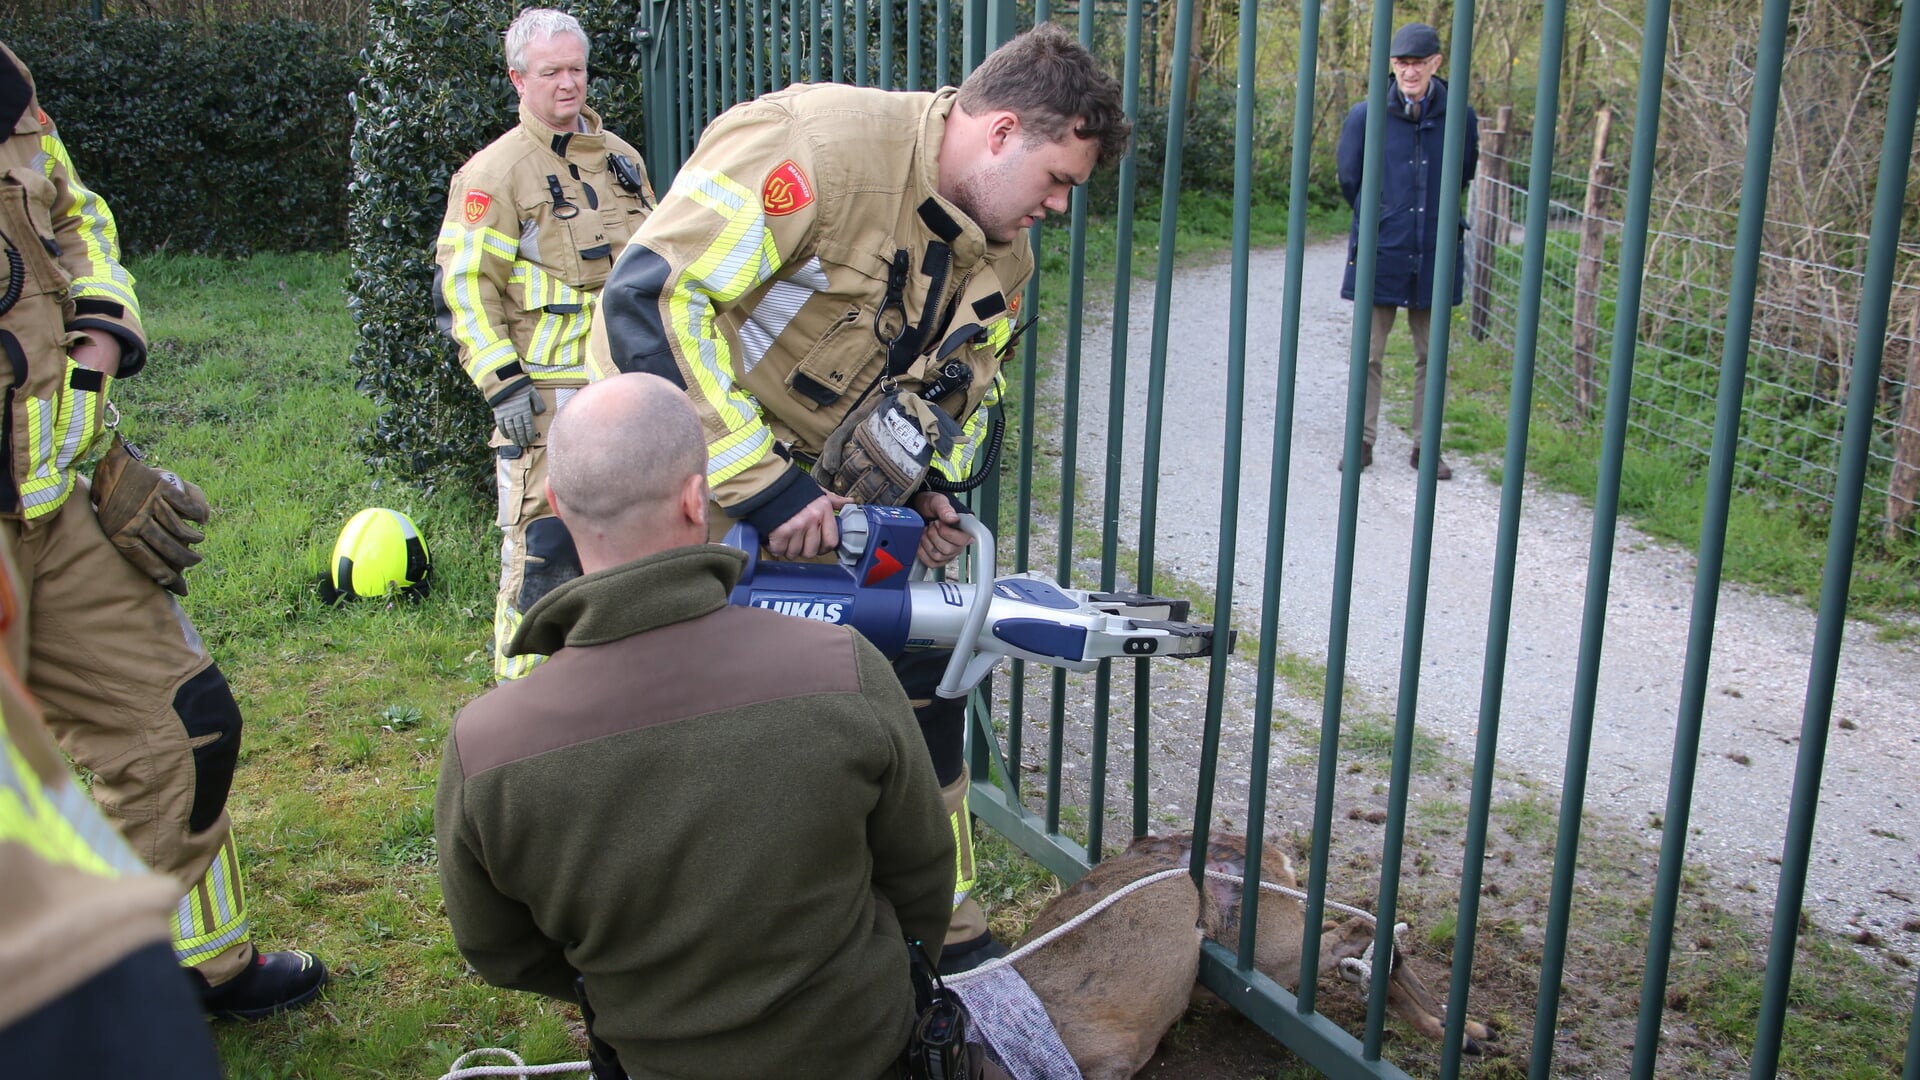 De brandweer heeft het hek ontzet om het hert te kunnen bevrijden. | Foto: AS Media